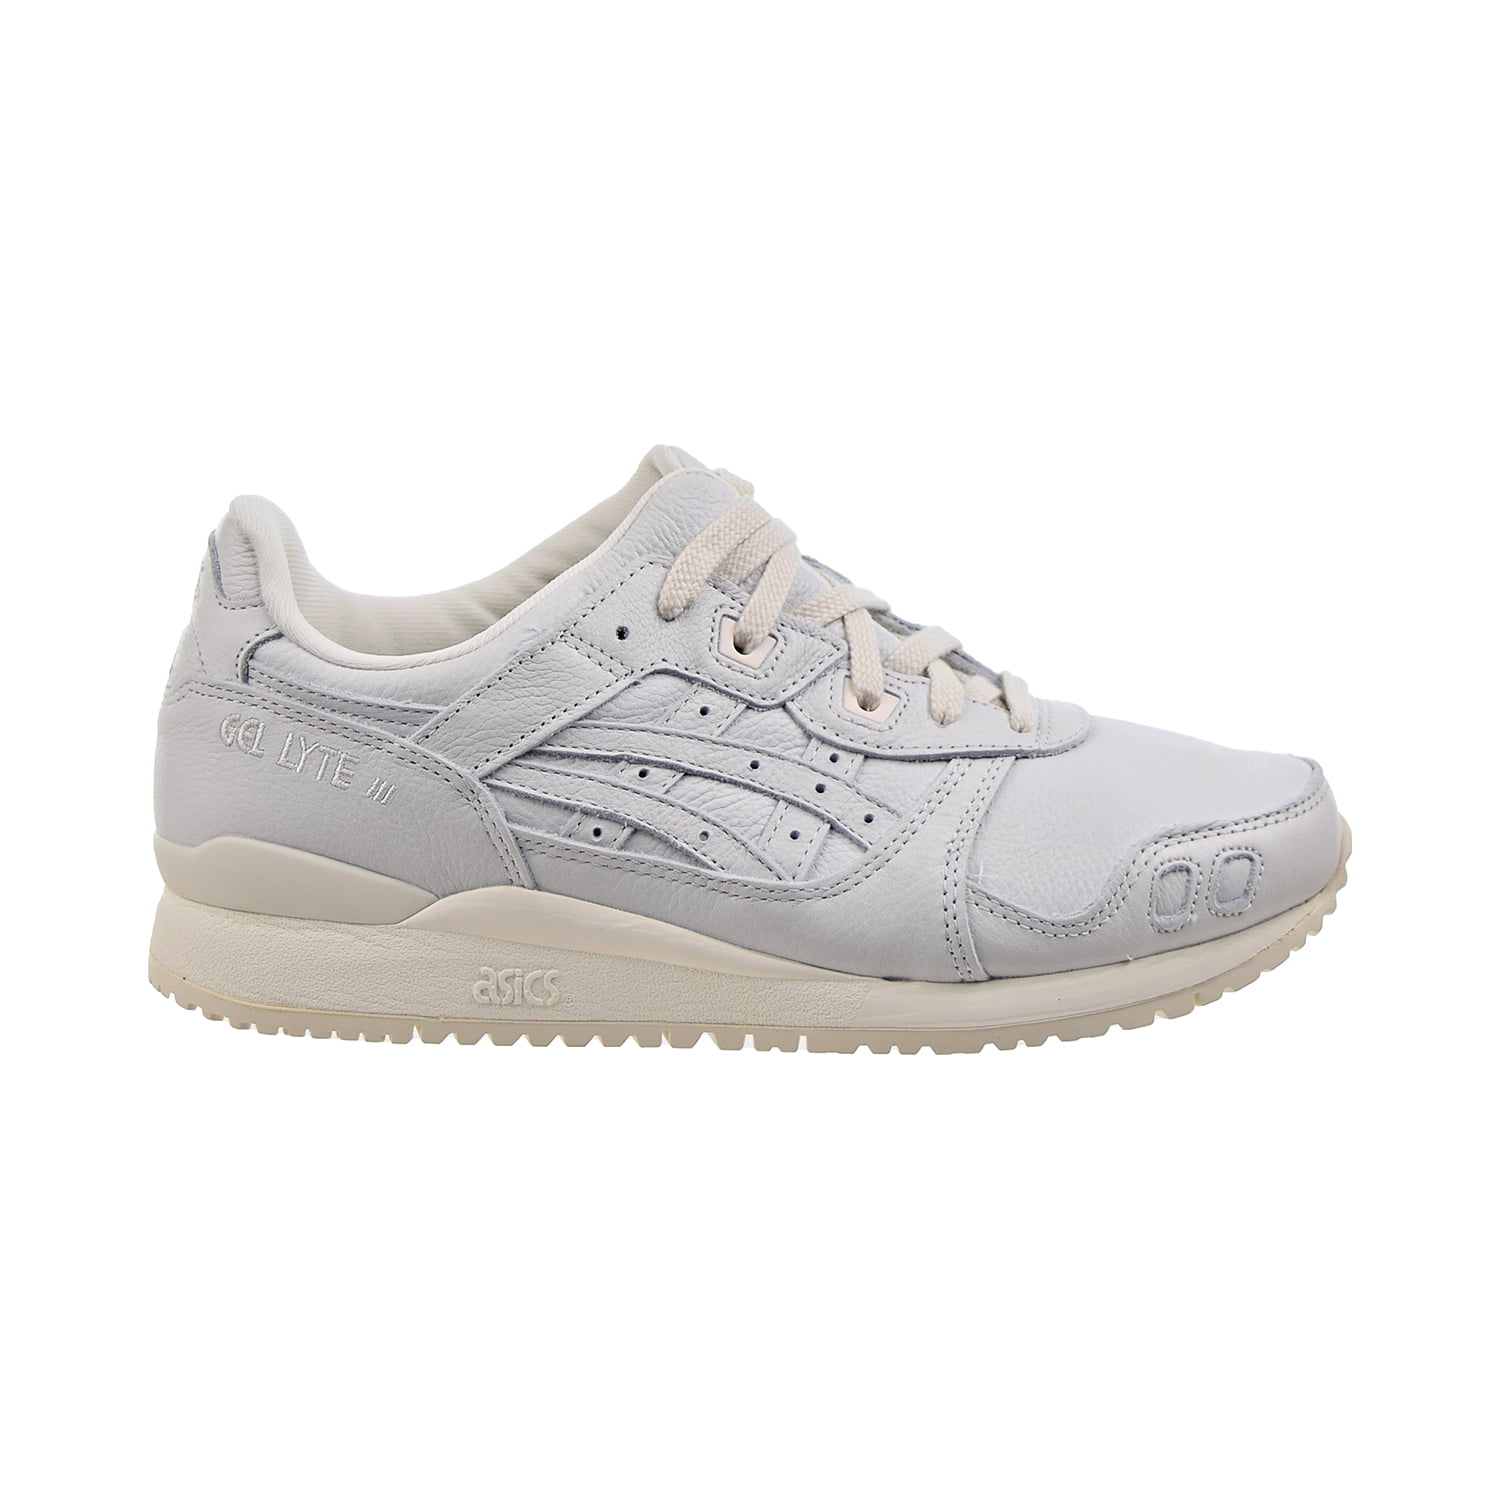 Gel-Lyte III Men's Shoes Glacier Grey-Cream 1201a295-021 -